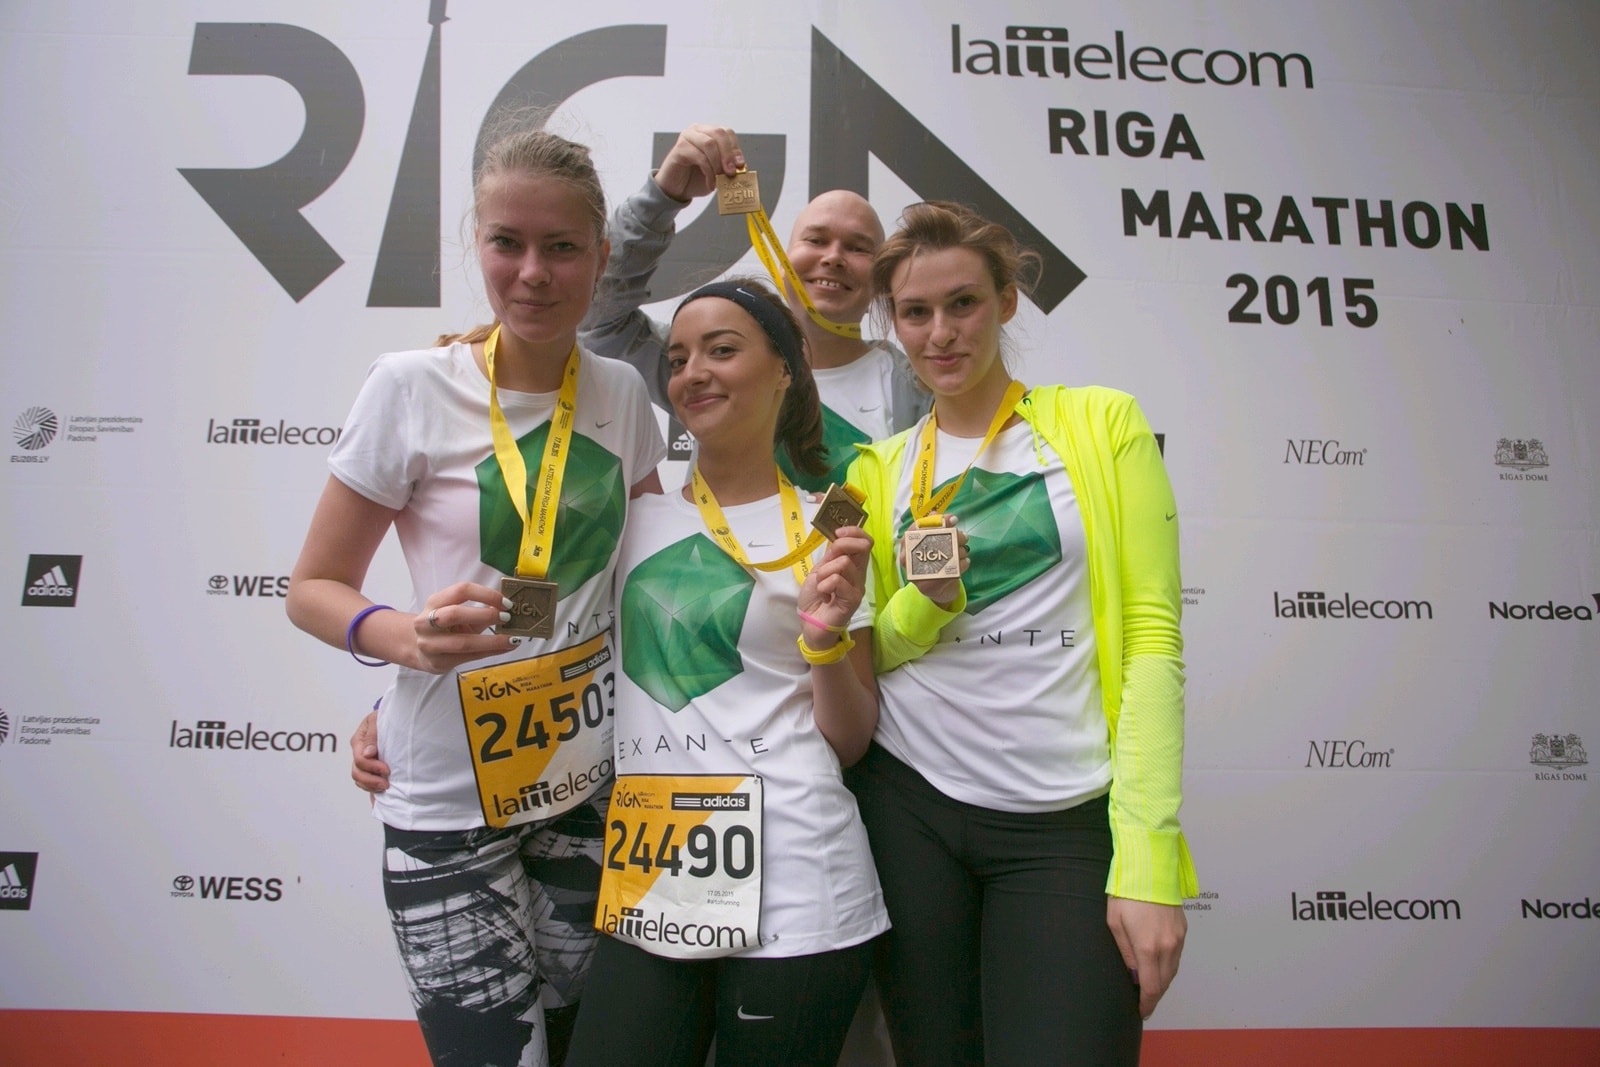 Marathon in Riga – 17.05.2015 – Riga, Latvia